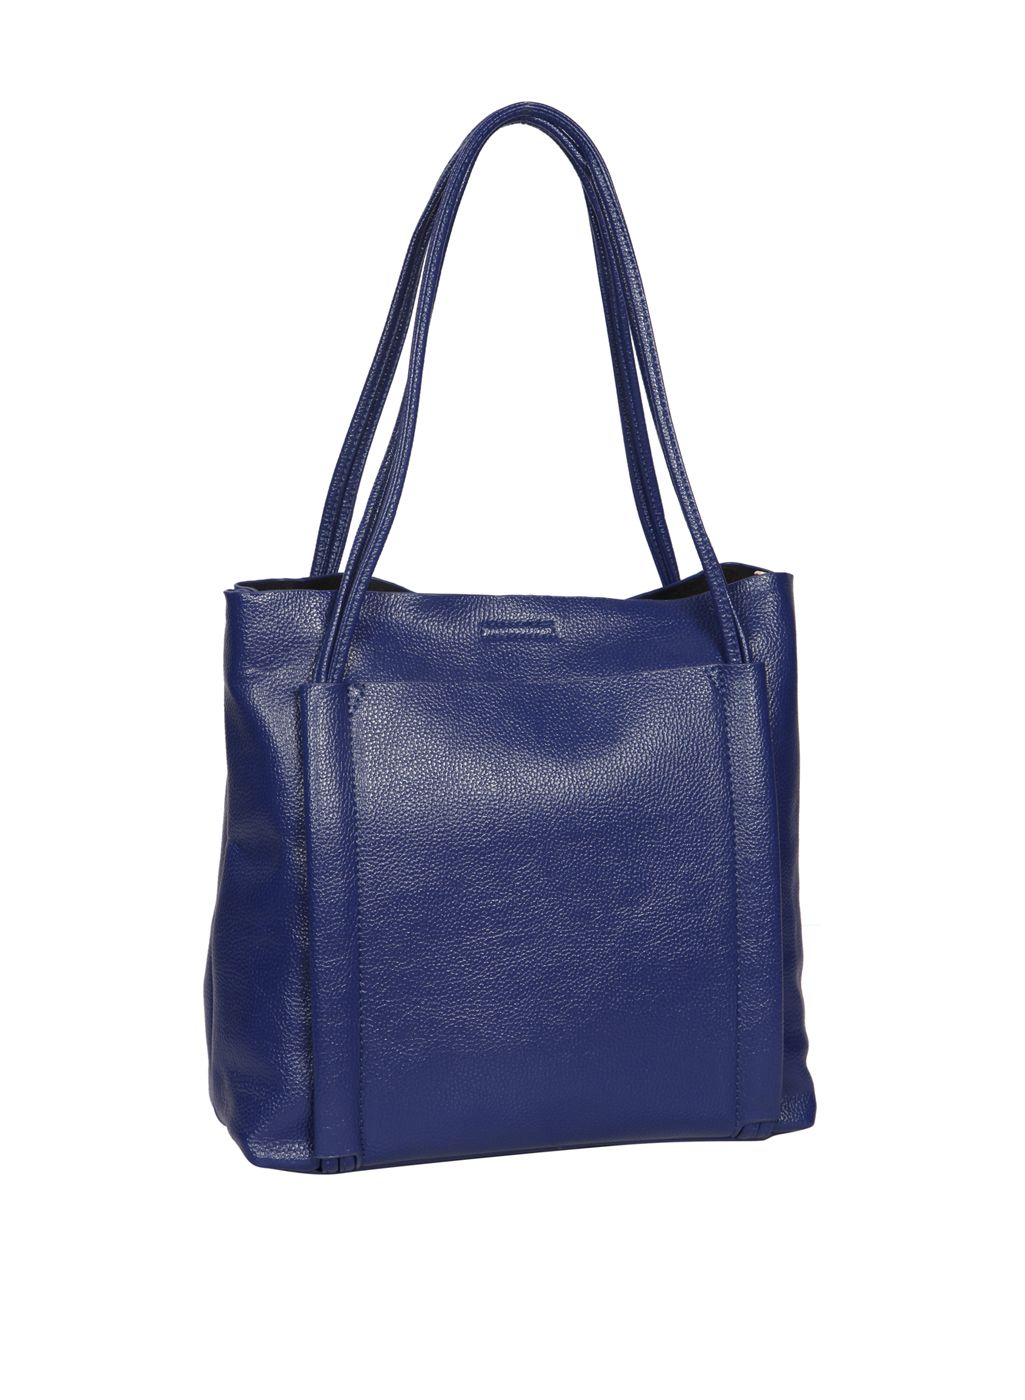 Bagkok Blue P.U. Tote Bag - Buy Bagkok Blue P.U. Tote Bag Online at ...